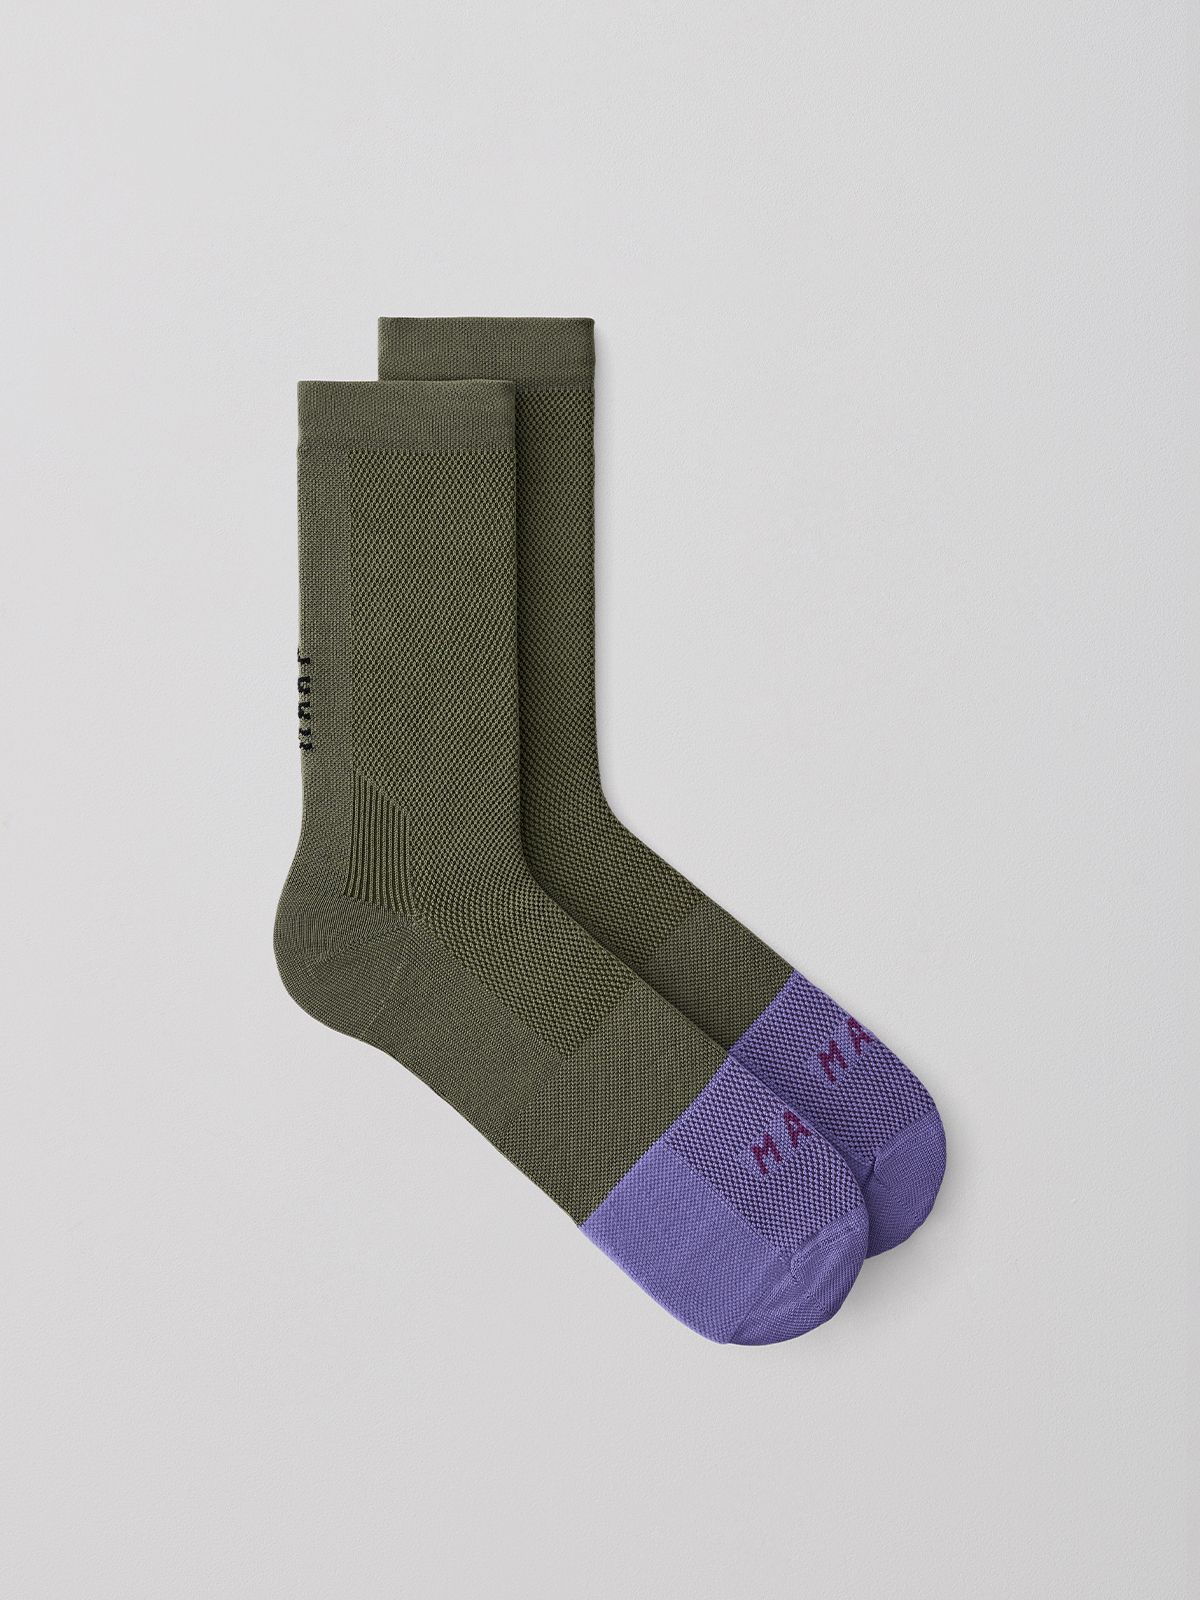 Division Sock (Loam)